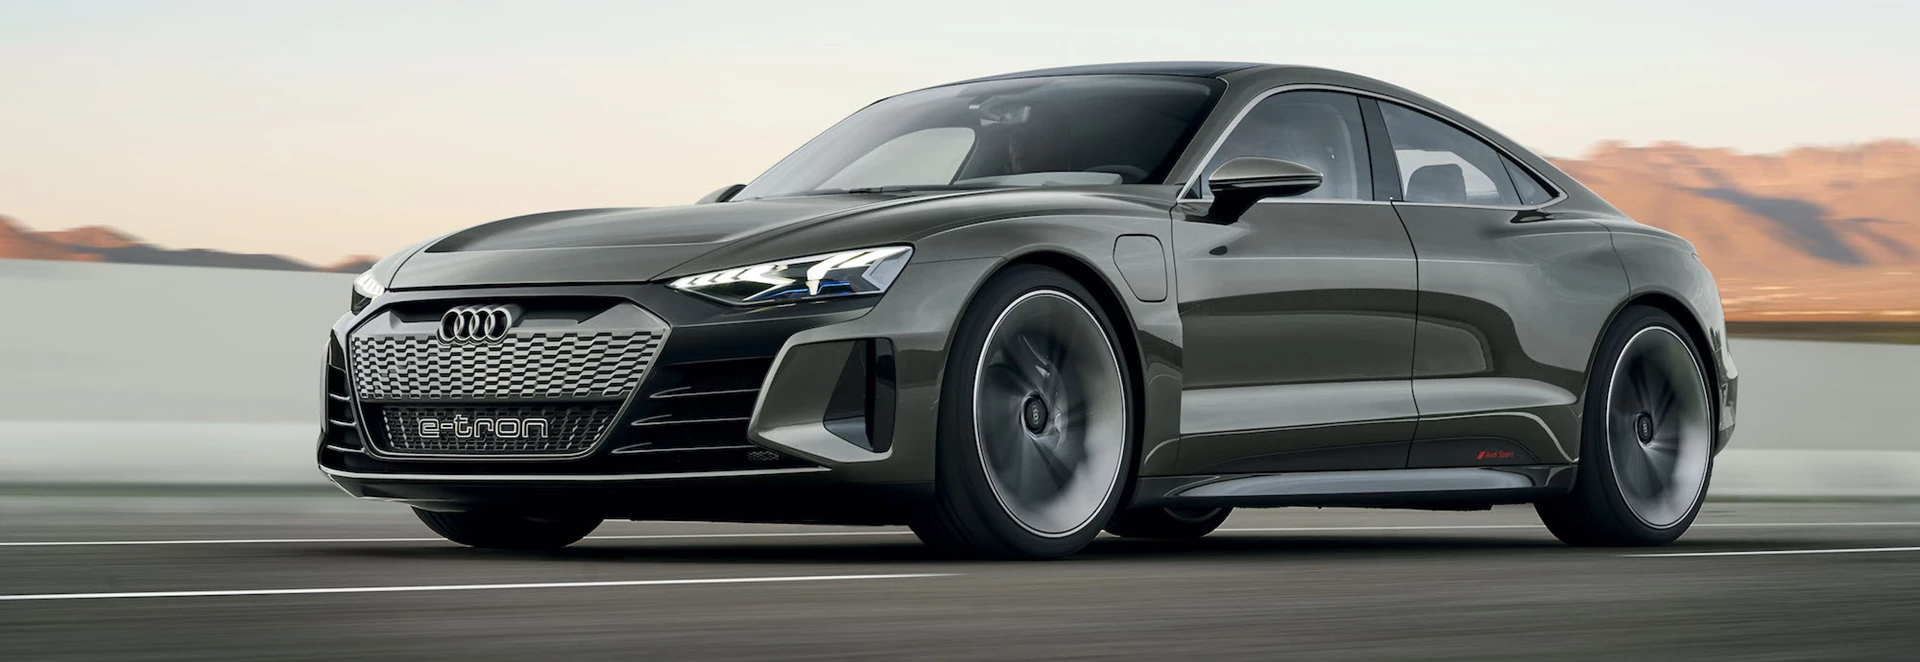 Audi reveals e-tron GT concept